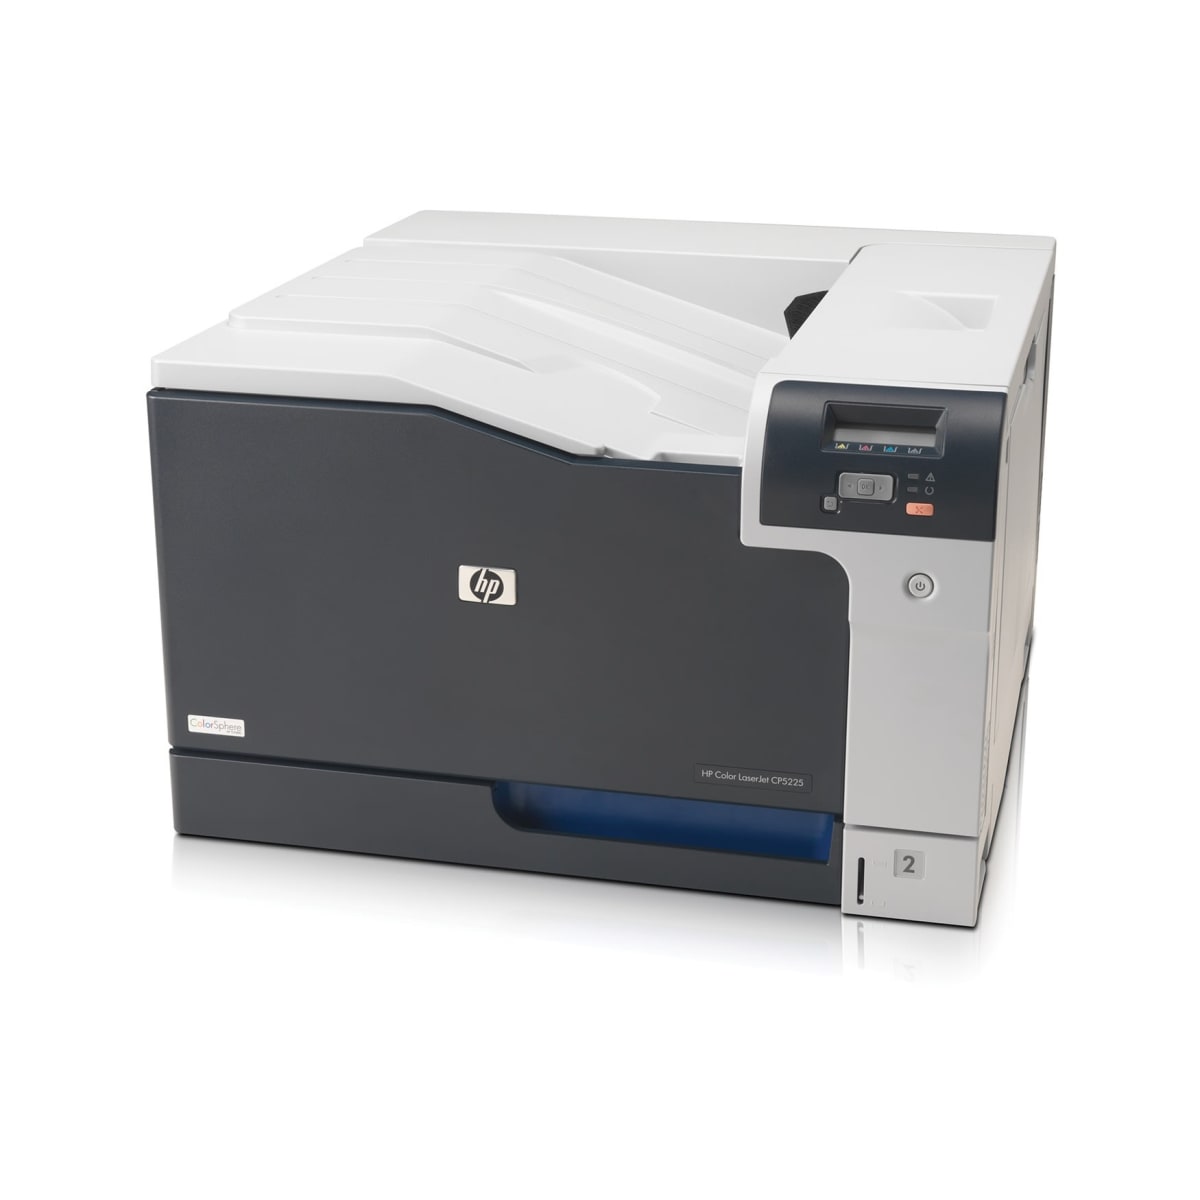 HP Color LaserJet Pro CP5225 A3 värilasertulostin | Karkkainen.com  verkkokauppa